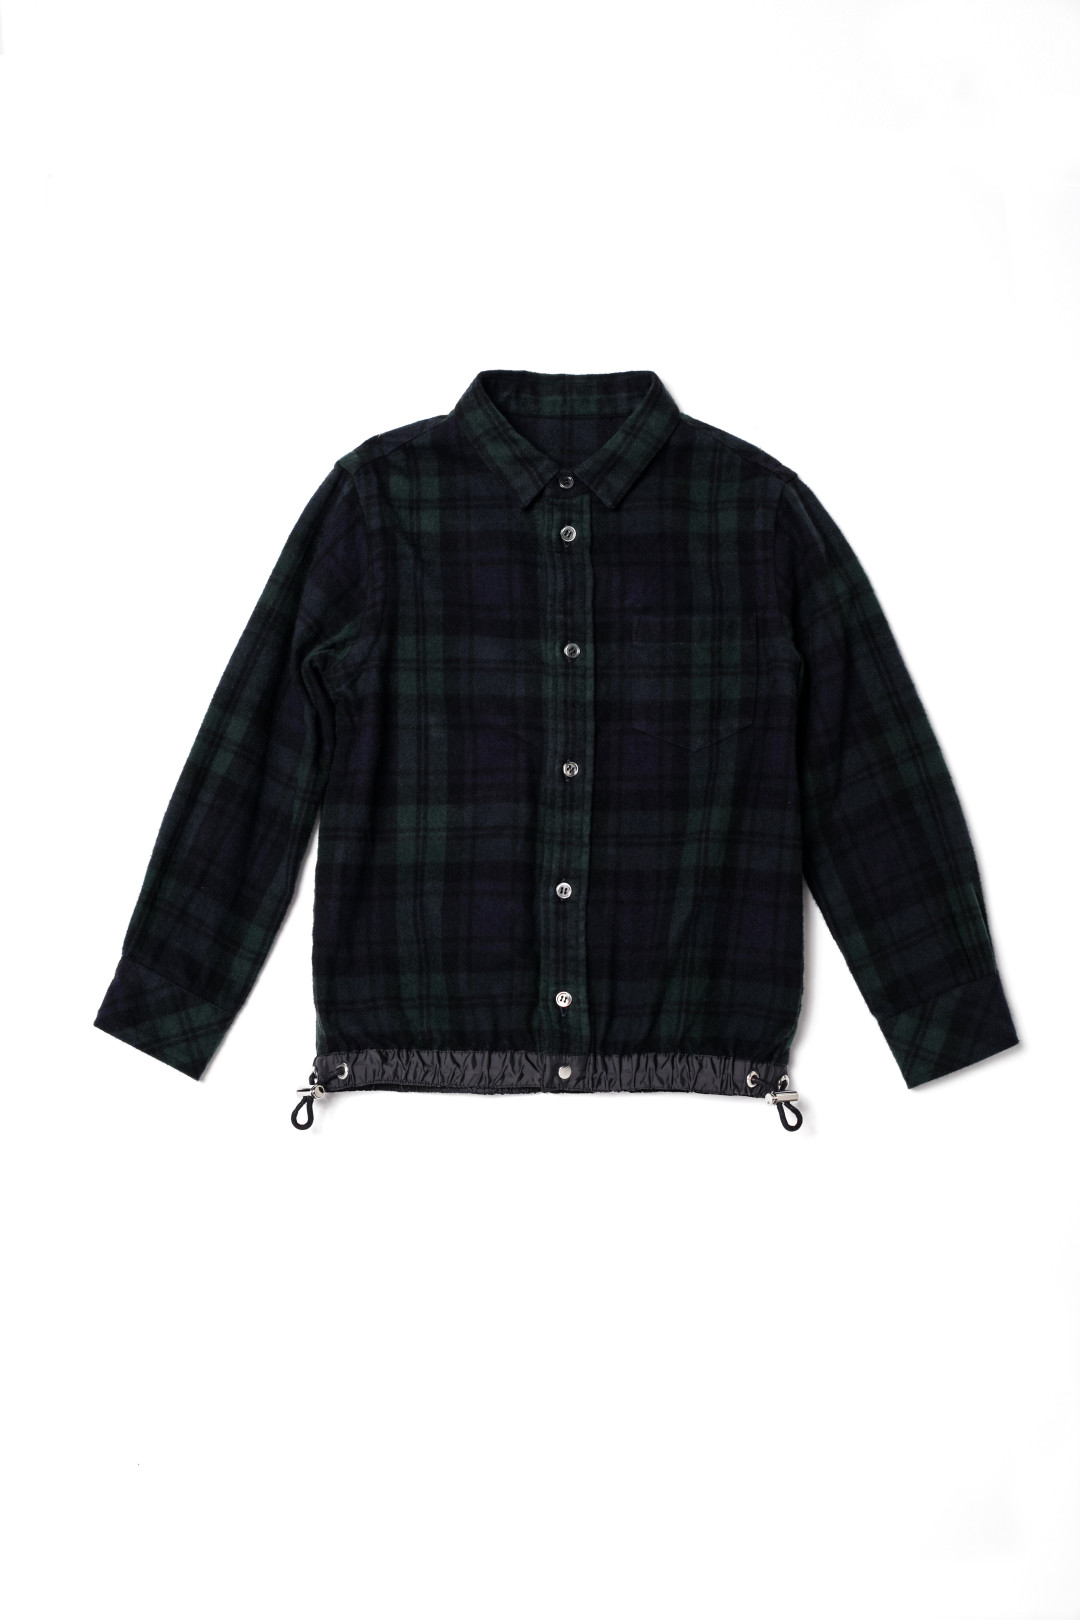 Shirt 17-00017K/Black 2万8,000円